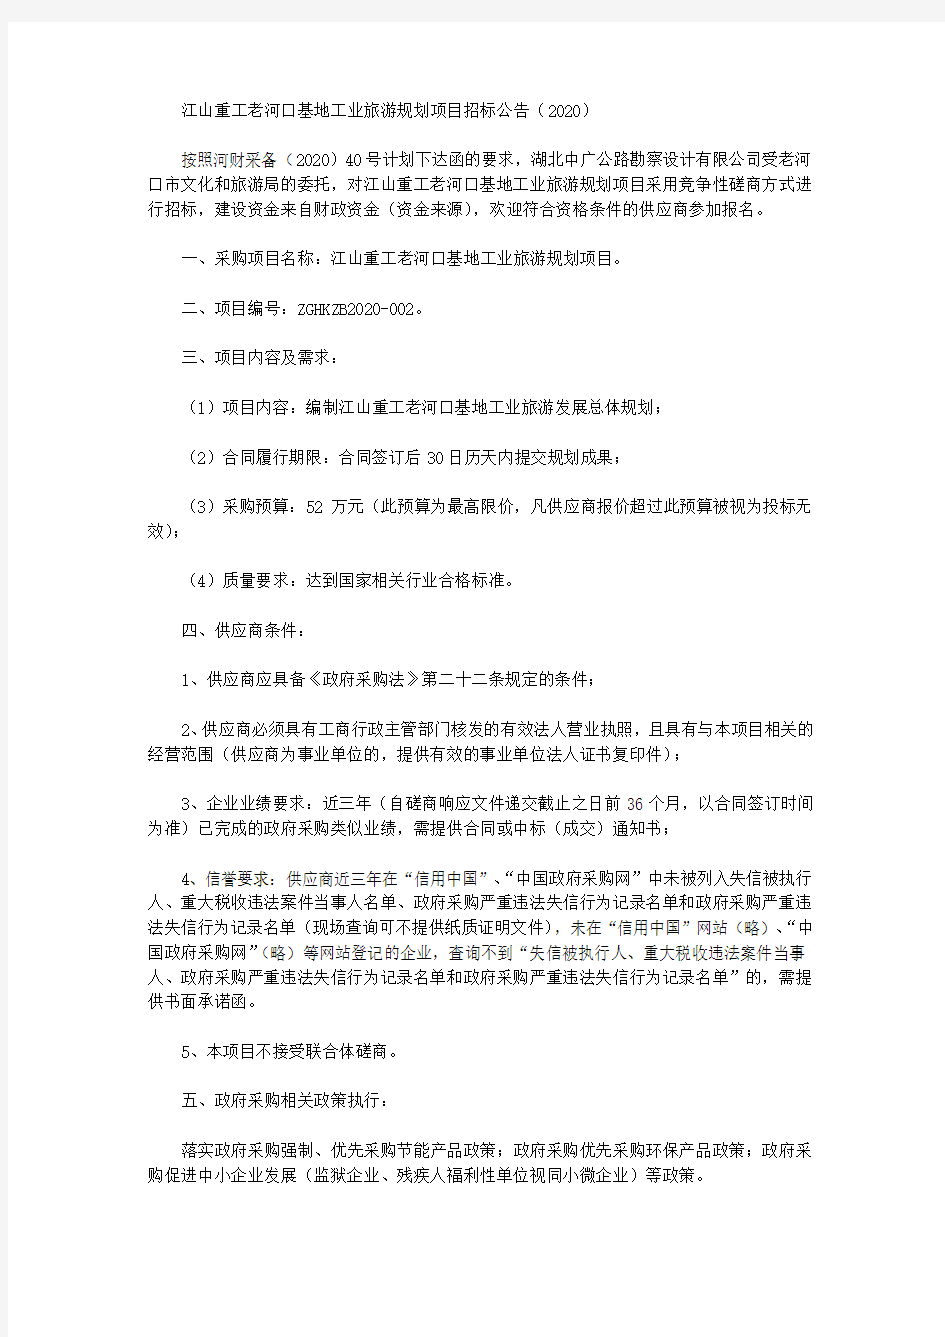 江山重工老河口基地工业旅游规划项目招标公告(2020)